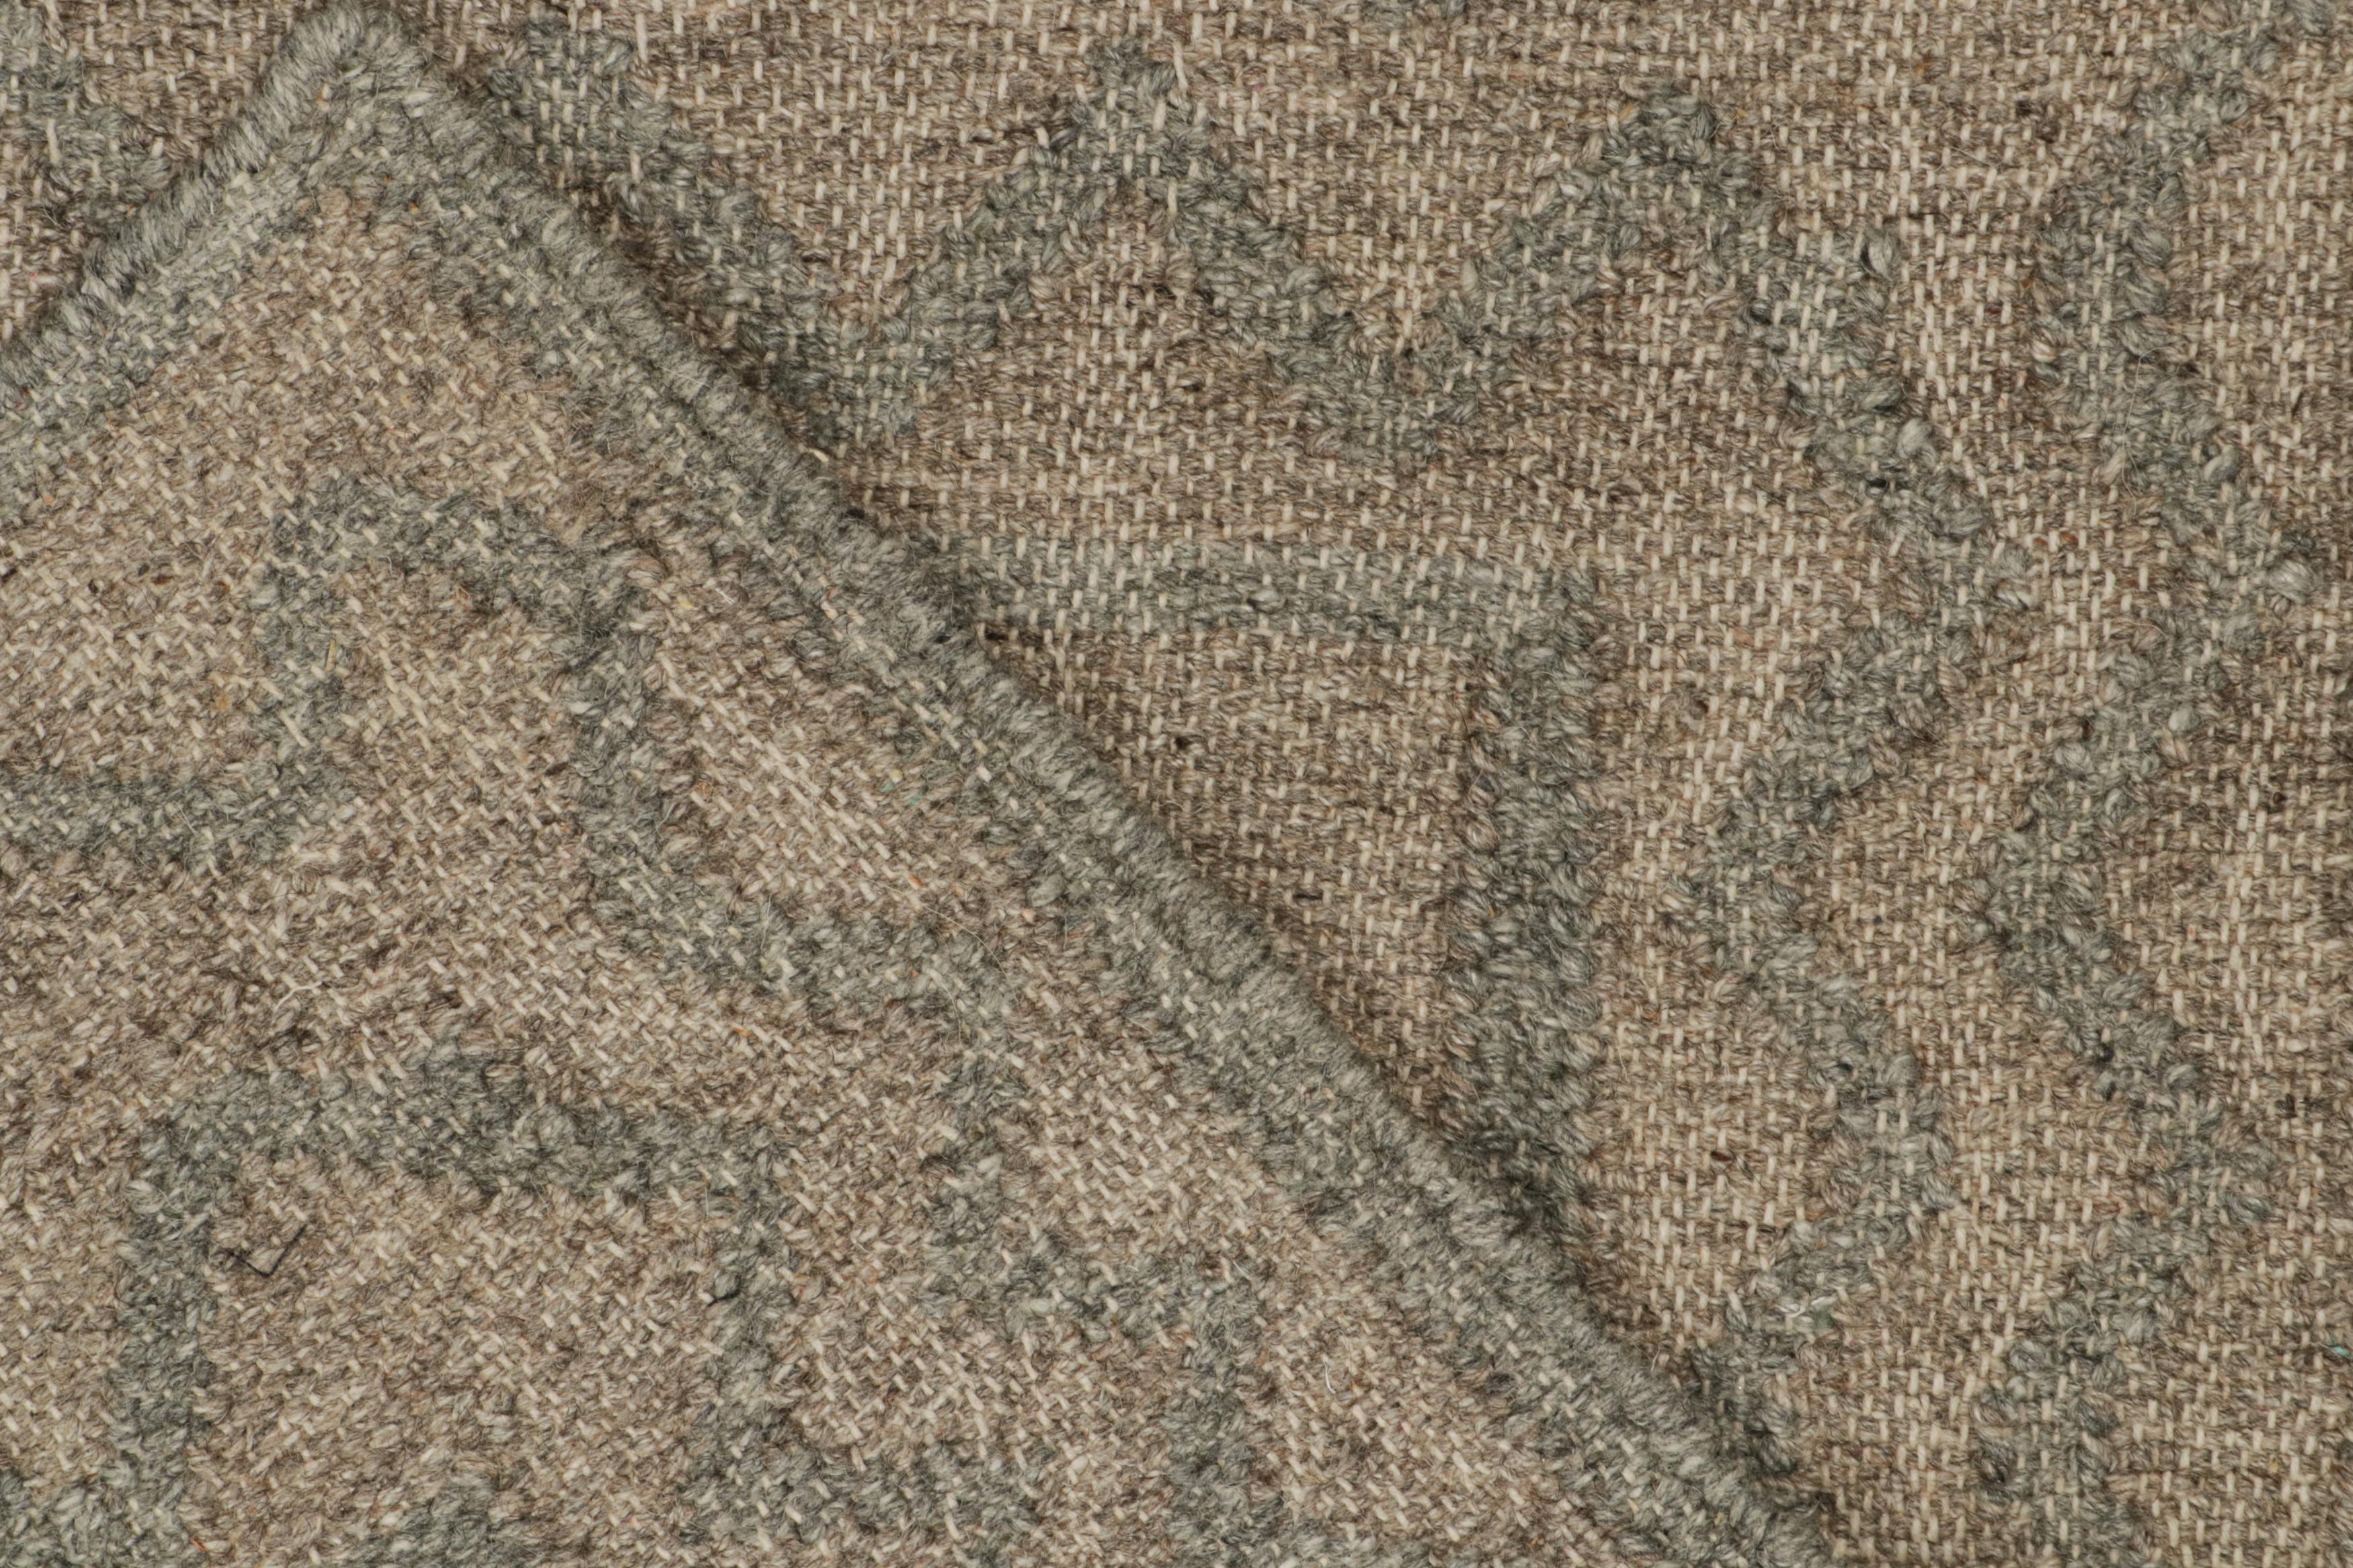 Wool Rug & Kilim’s Modern Kilim rug in Brown & Grey Patterns For Sale